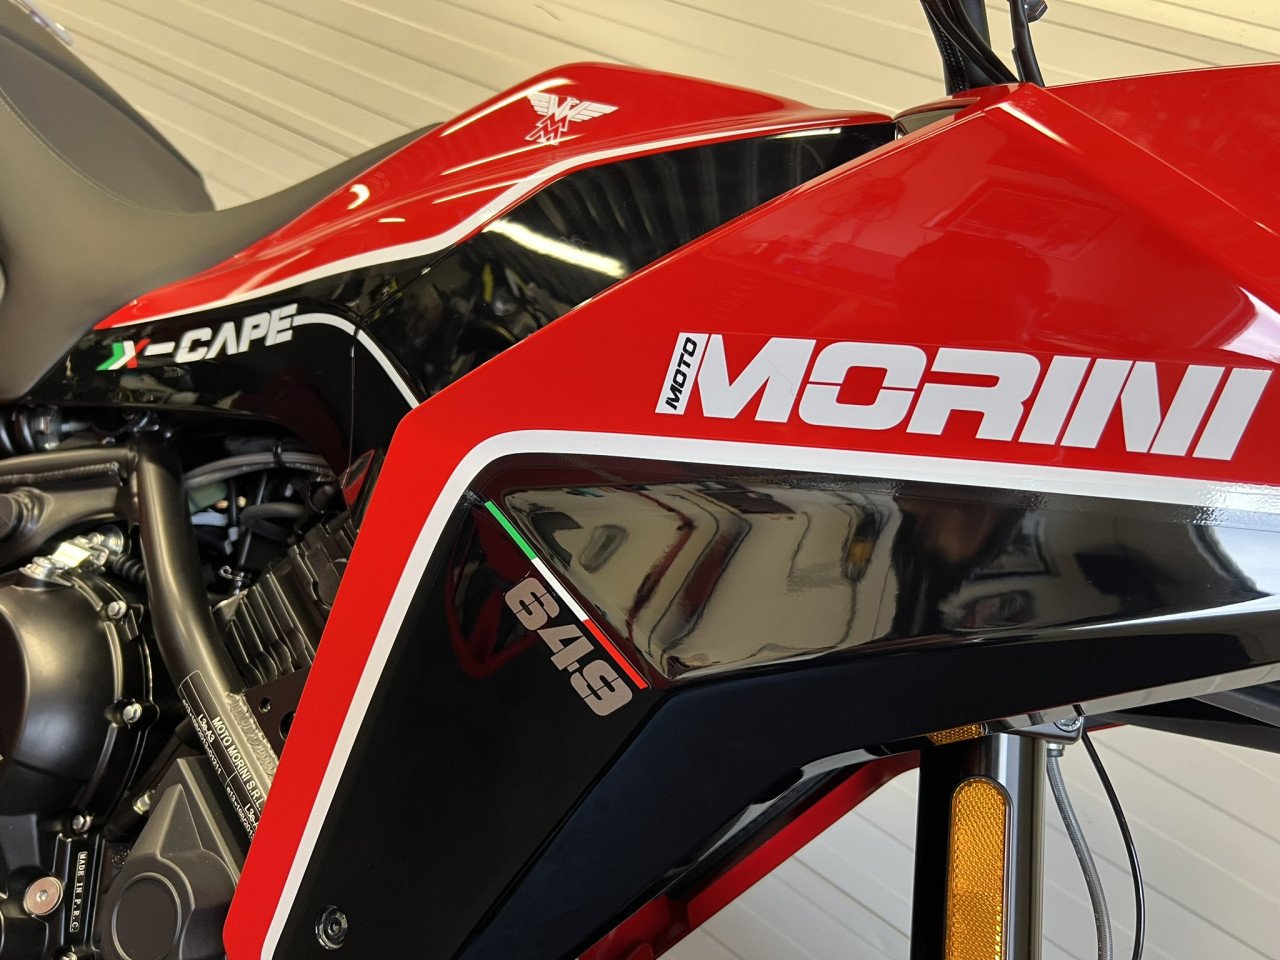 Nieuw de Moto Morini X-Cape nu op voorraad!